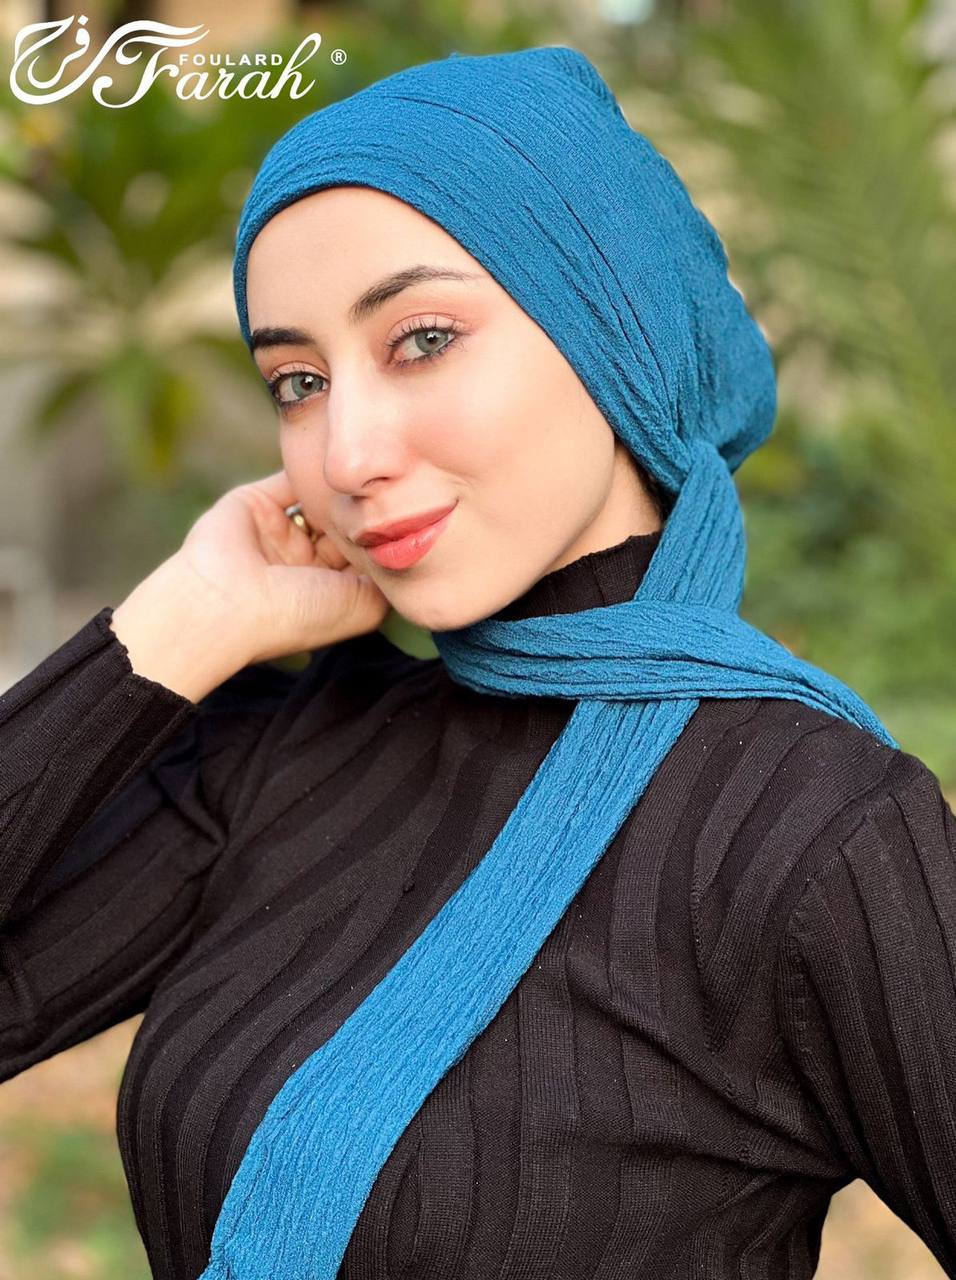 Elegant Pleated Turban Hijab - Stylish Headwrap for Modest Fashion - Nice Blue